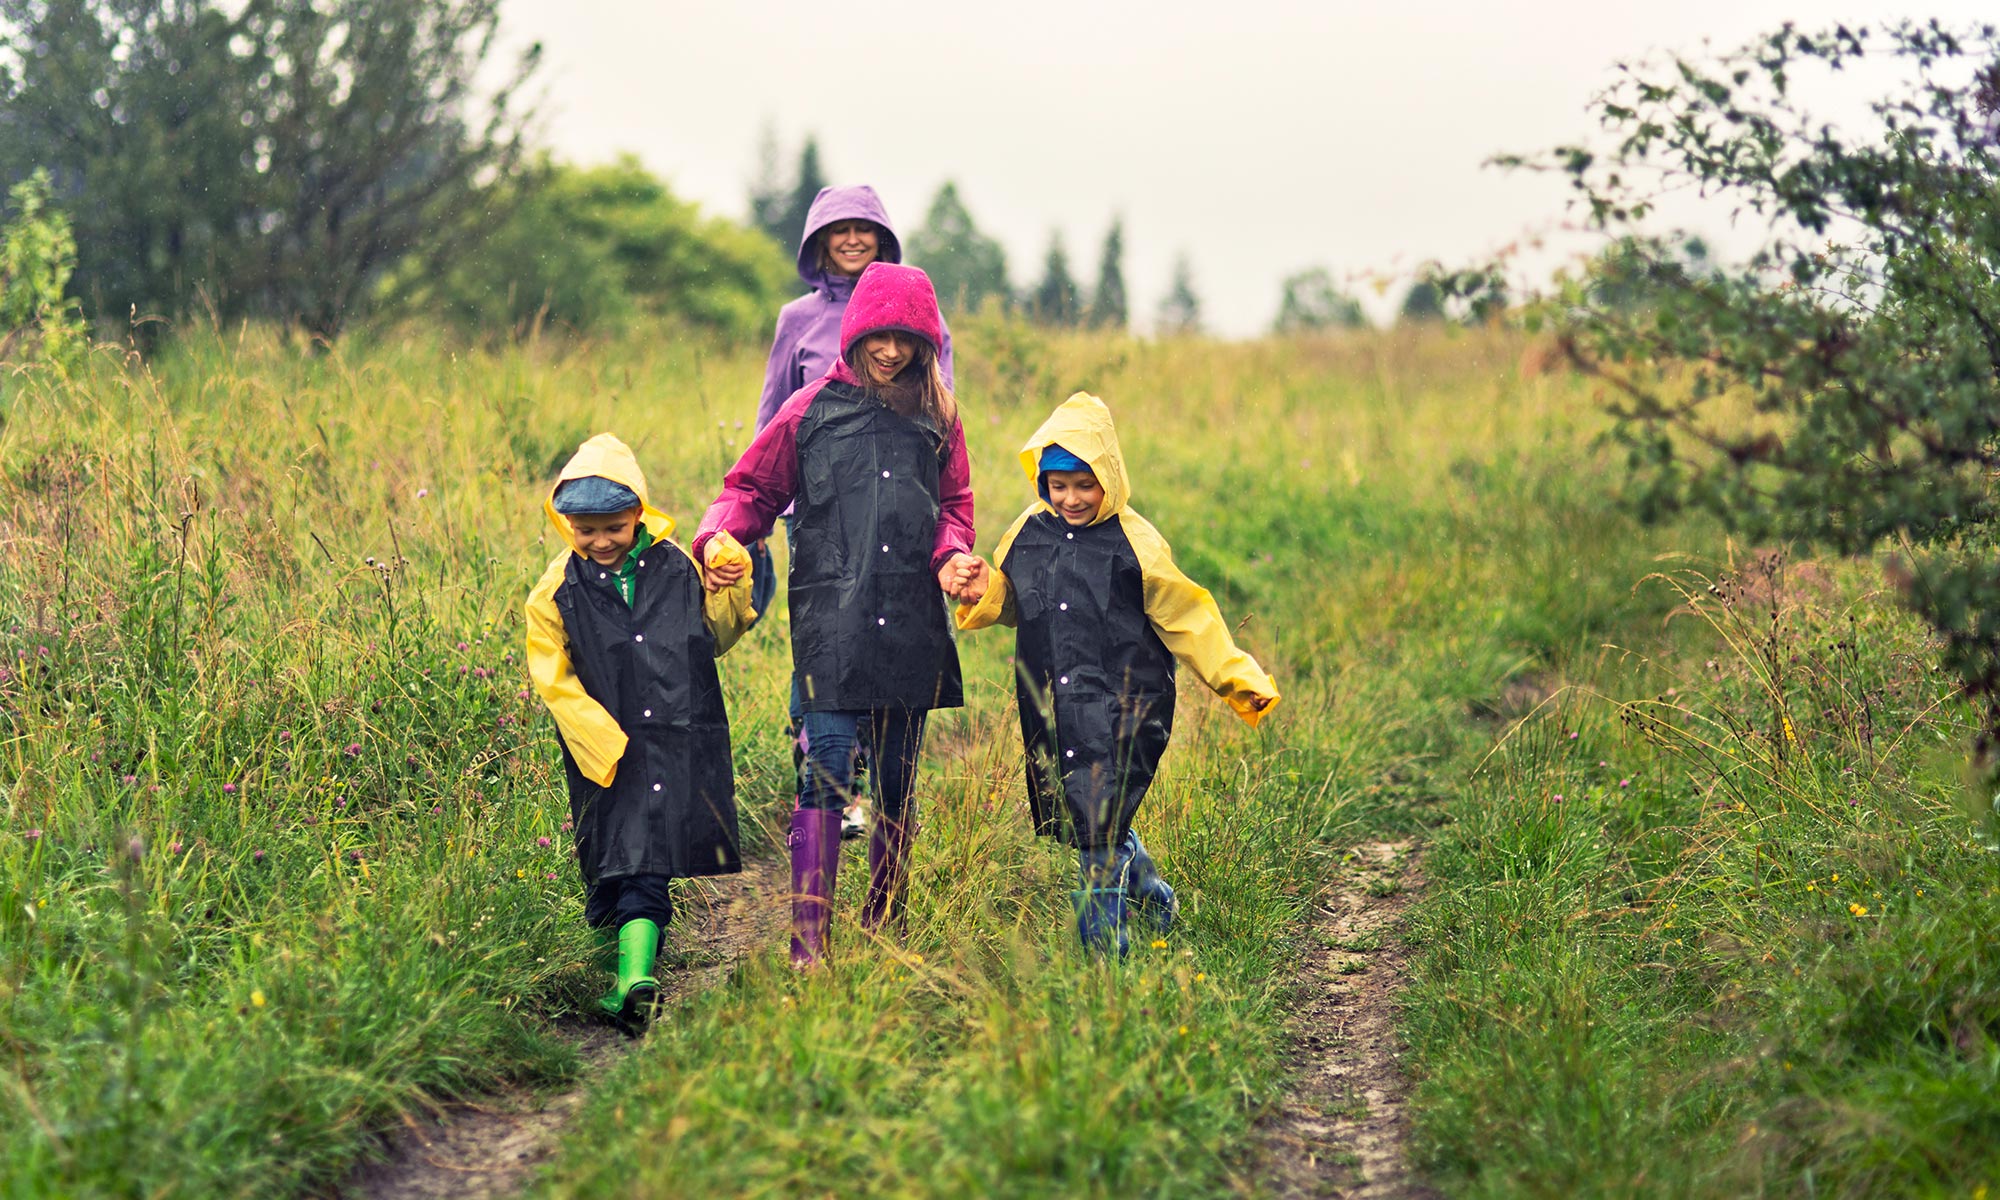 En familj med regnkläder ute i naturen